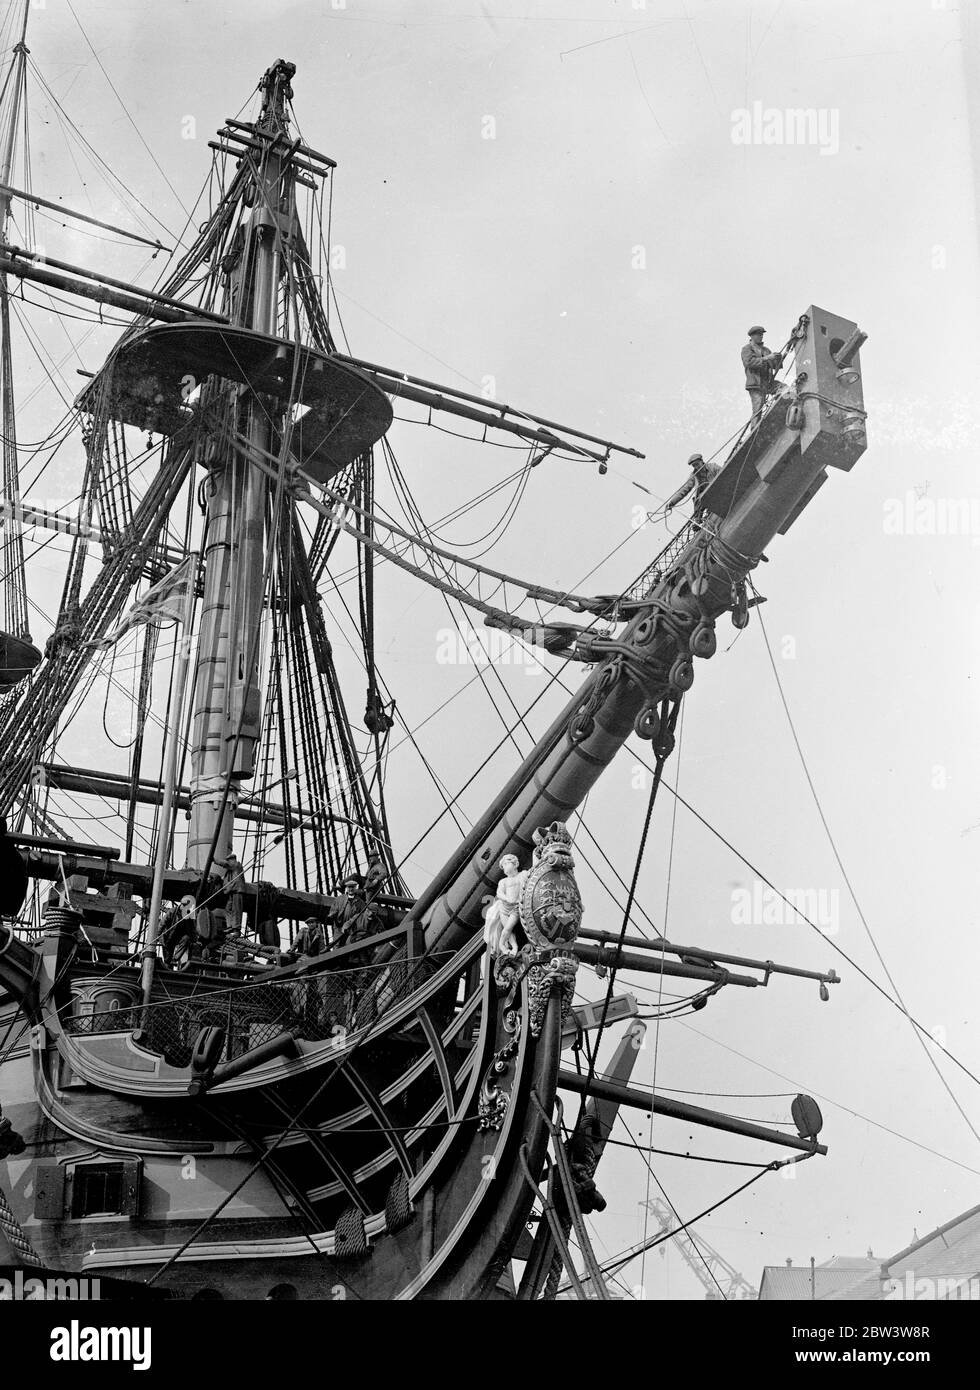 Entfernen ' Sieg ' s ' bowsprit in Portsmouth, kann Schlacht von Trafalgar gesehen haben. H M S Victory, Nelson ' s berühmten Flaggschiff, wird Reparaturen an Portsmouth Dockyard. Der Geist ist verrottet und wird entfernt. Dazu ist es notwendig, den Figurkopf abzuziehen. Das letzte Mal, dass etwas getan wurde, um den Geist bowSpirit war in 1859, wenn es refitted. Es gibt keine Aufzeichnung des Alters der bowspirit , aber es wird angenommen, entweder in 1805, dem Jahr des Trafalgar ausgestattet worden . Das Schiff wurde 1765 gebaut. Foto zeigt, Entfernen der Victory ' s Bogengeist in Portsmouth Dockyard. Th Stockfoto